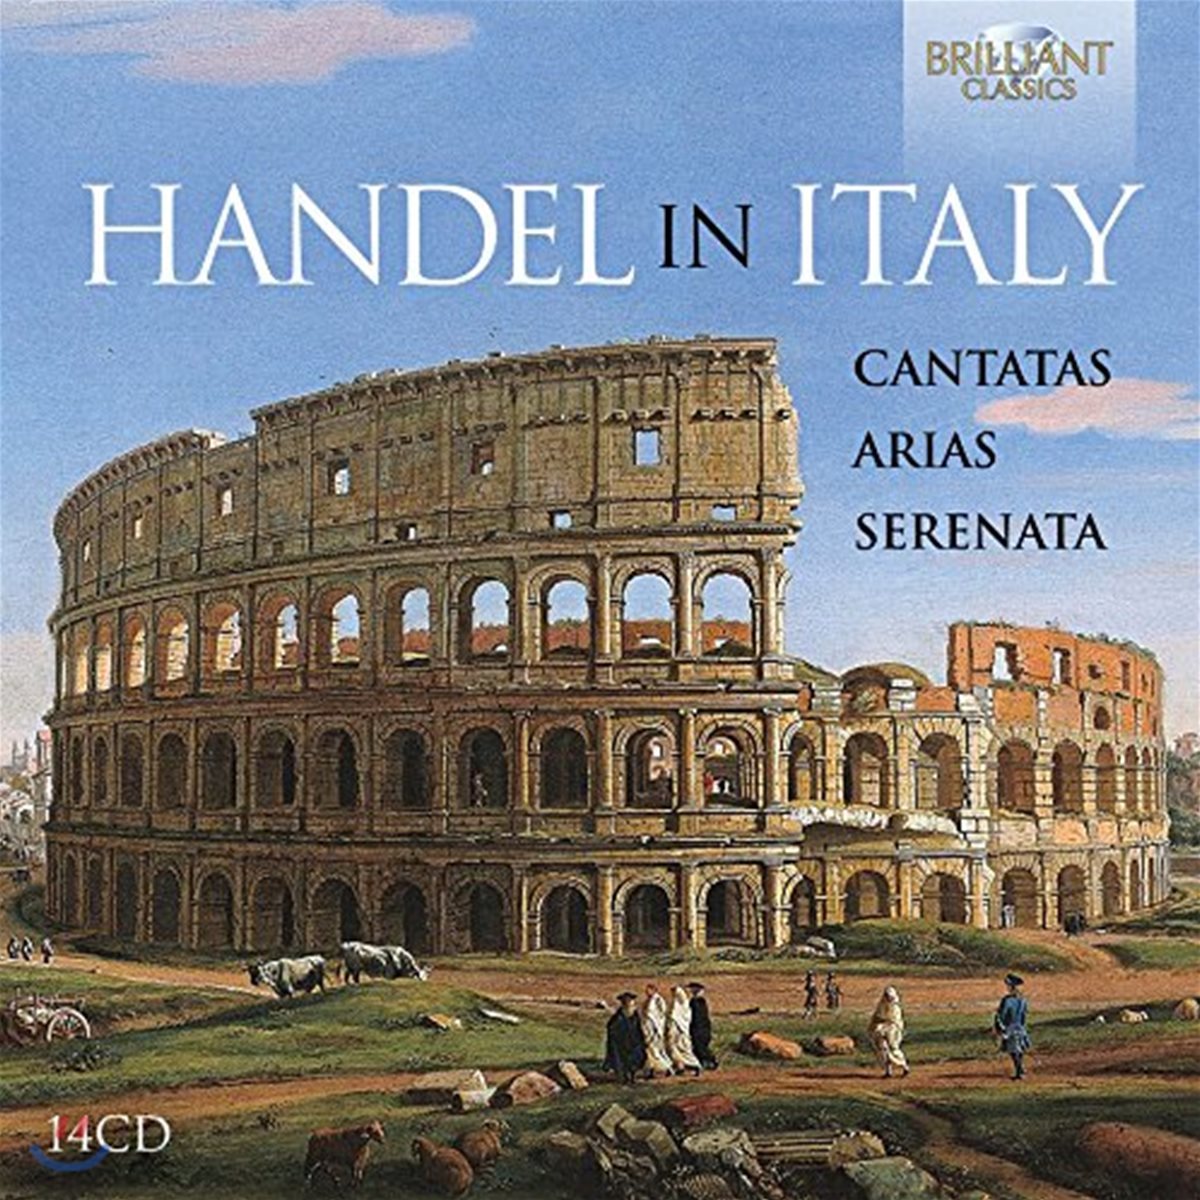 헨델: 칸타타, 아리아와 세레나데 작품집 (Handel In Italy: Cantatas, Arias &amp; Serenata)